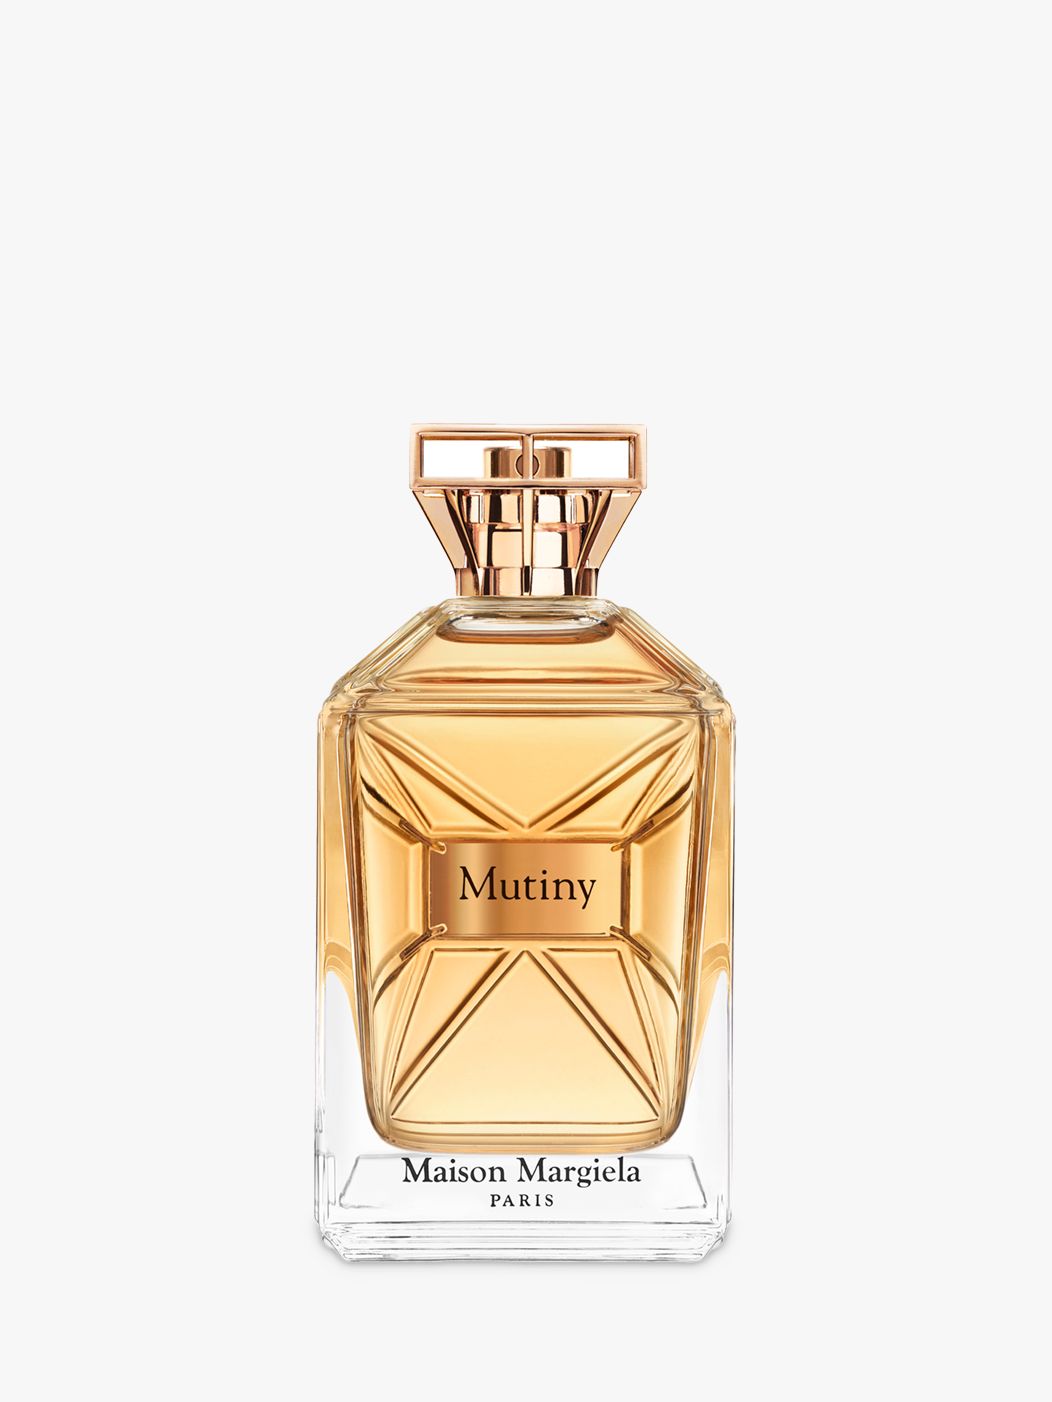 Maison Margiela Mutiny Eau de Parfum at John Lewis & Partners